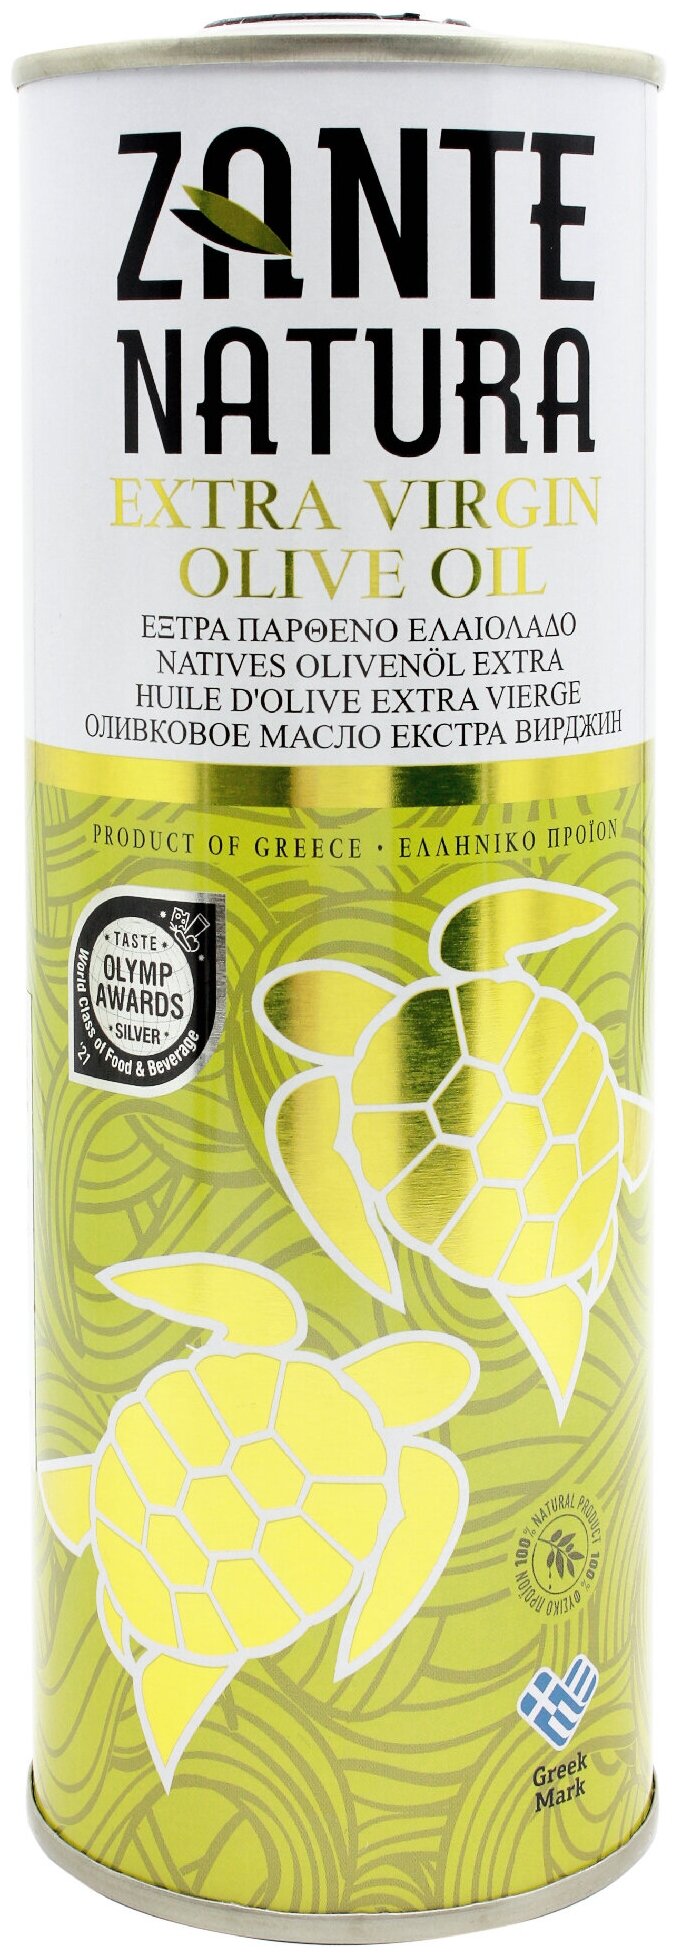 Оливковое масло ZANTE NATURA высшего качества Extra Virgin, кислотность 0,5%, ж/б 500 мл, Греция